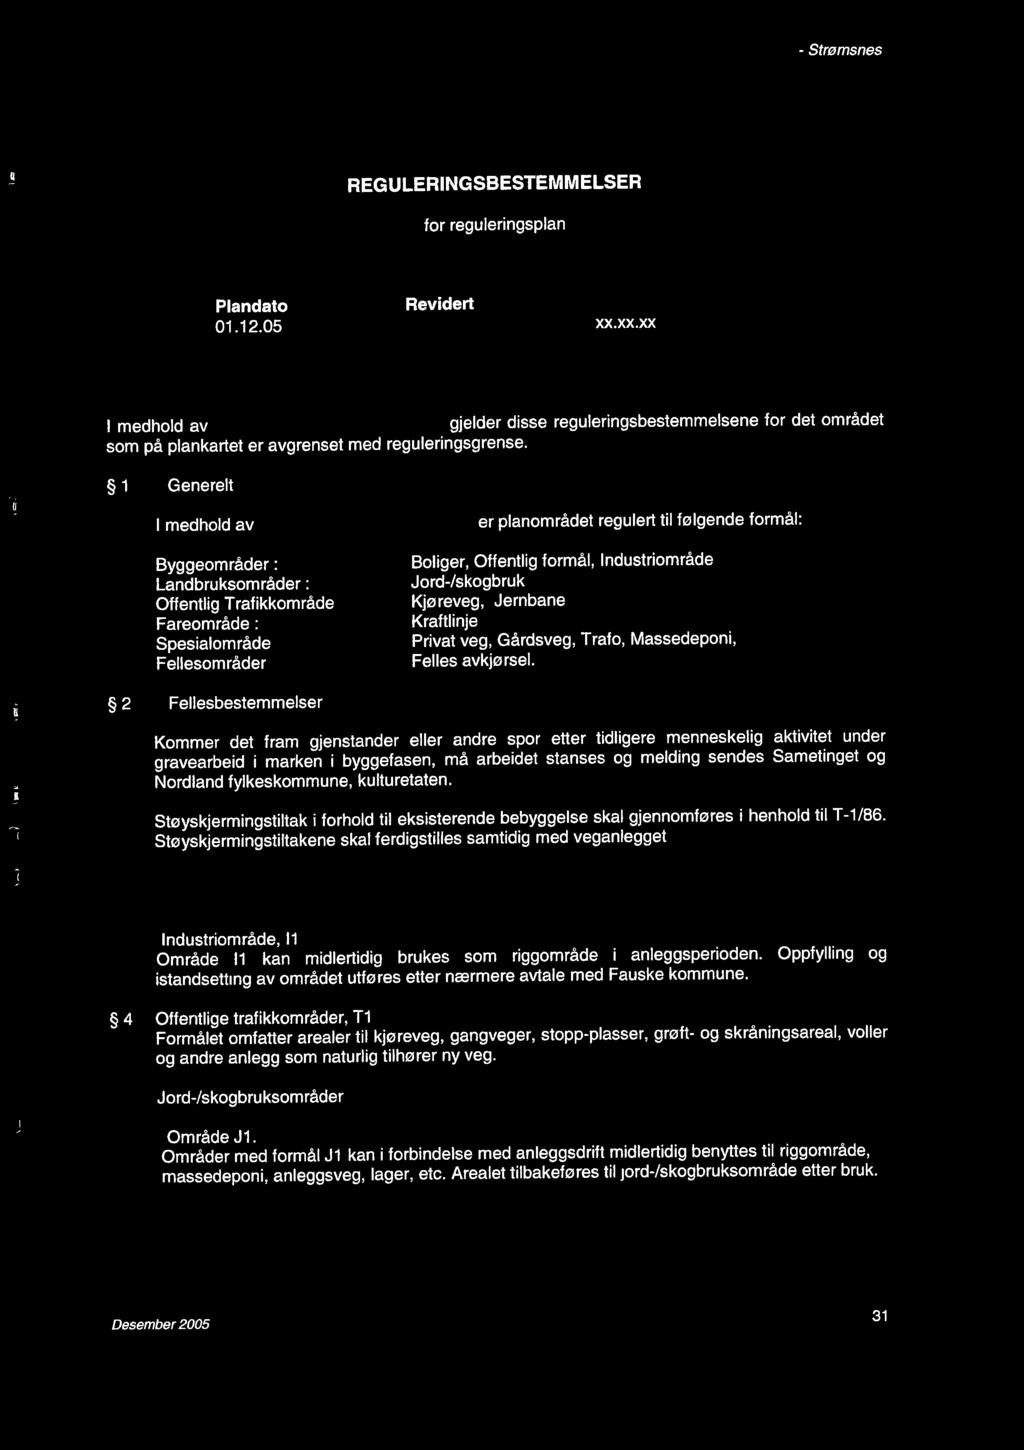 Regulerngsplan for Rv 80 Røvk - Strømsnes 6 REGULERINGSBESTEMMELSER ';'!I REGULERINGSBESTEMMELSER for regulerngsplan "Rv 80 Røvk - Strømsnes Fauske kommune" j " Il Plandato 01.12.05 Revdert xx.